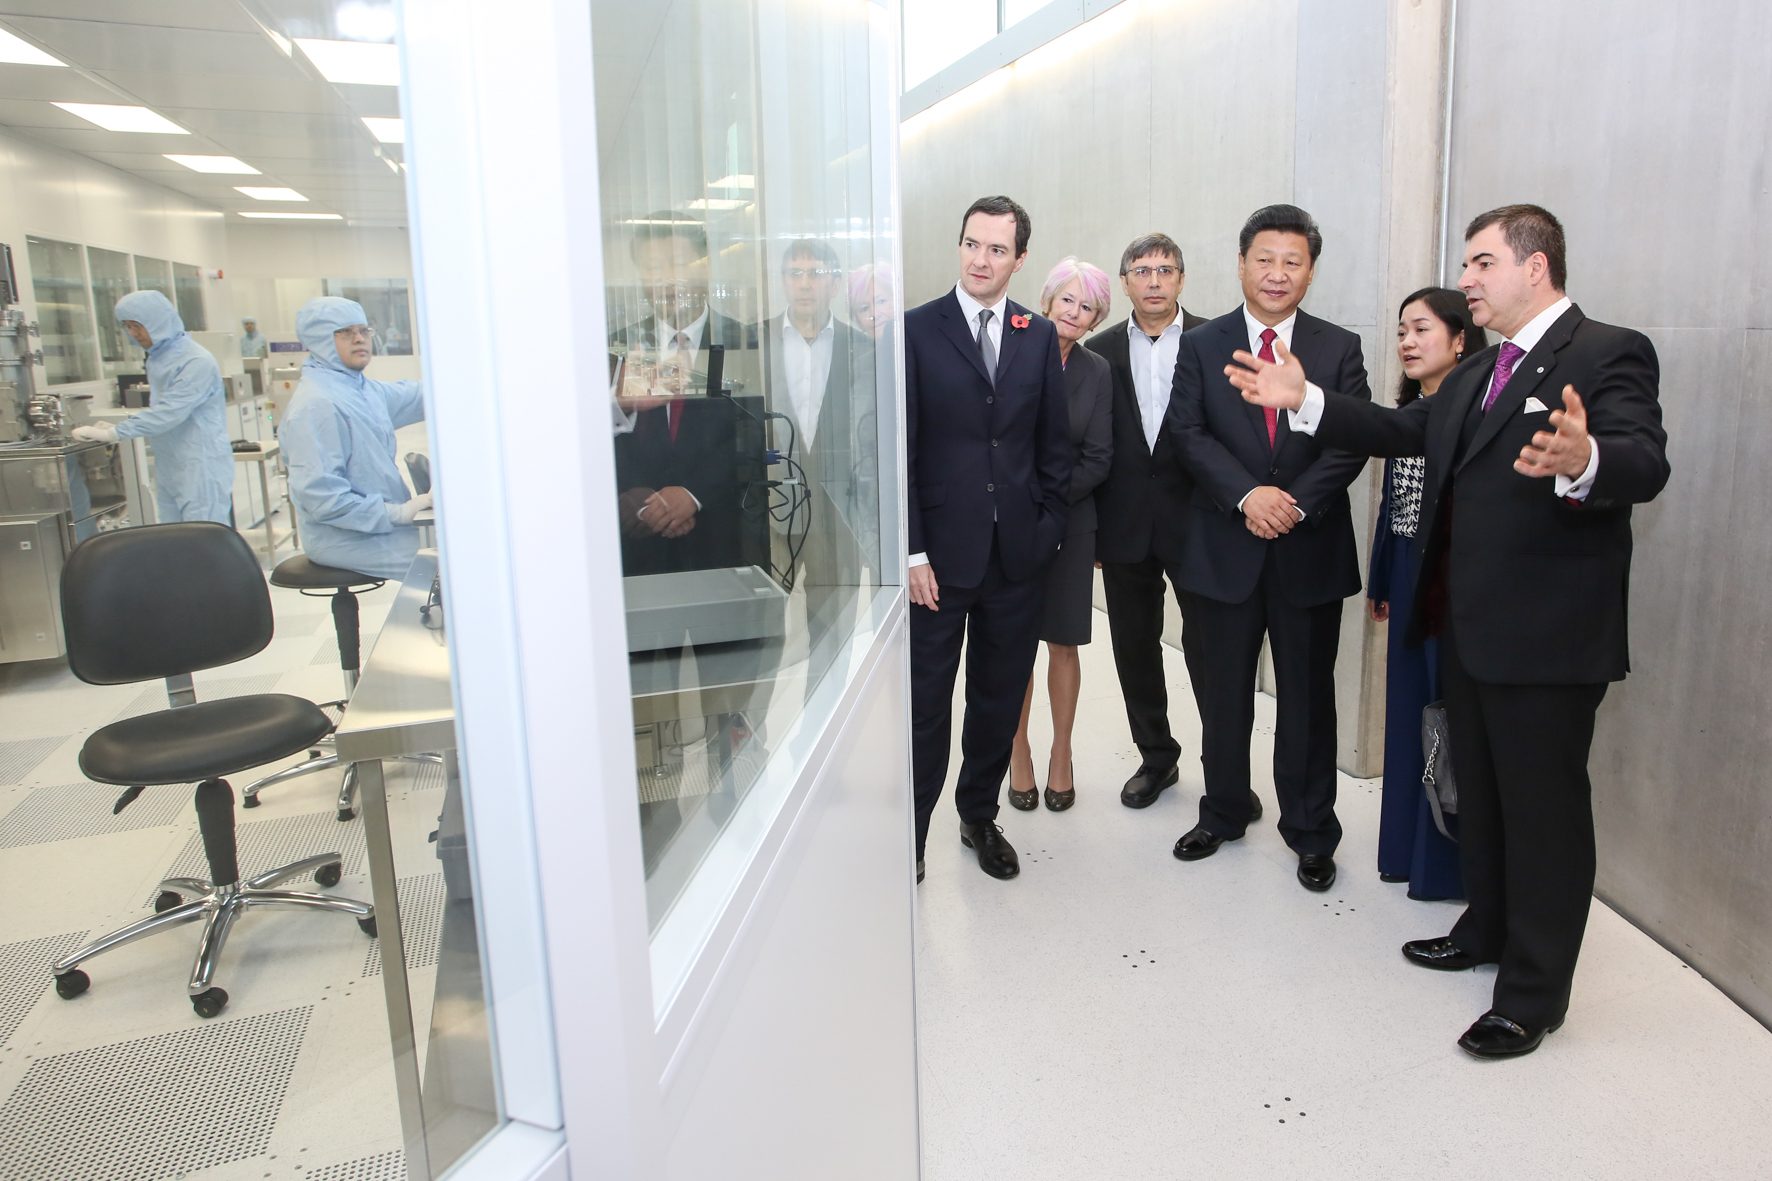 2015년 영국을 방문한 시진핑(오른쪽 세번째) 중국 국가주석이 영국 그래핀 연구의 산실이 맨체스터대학 국립 그래핀 연구소를 찾아 설명을 듣고 있다. 맨체스터대학 제공